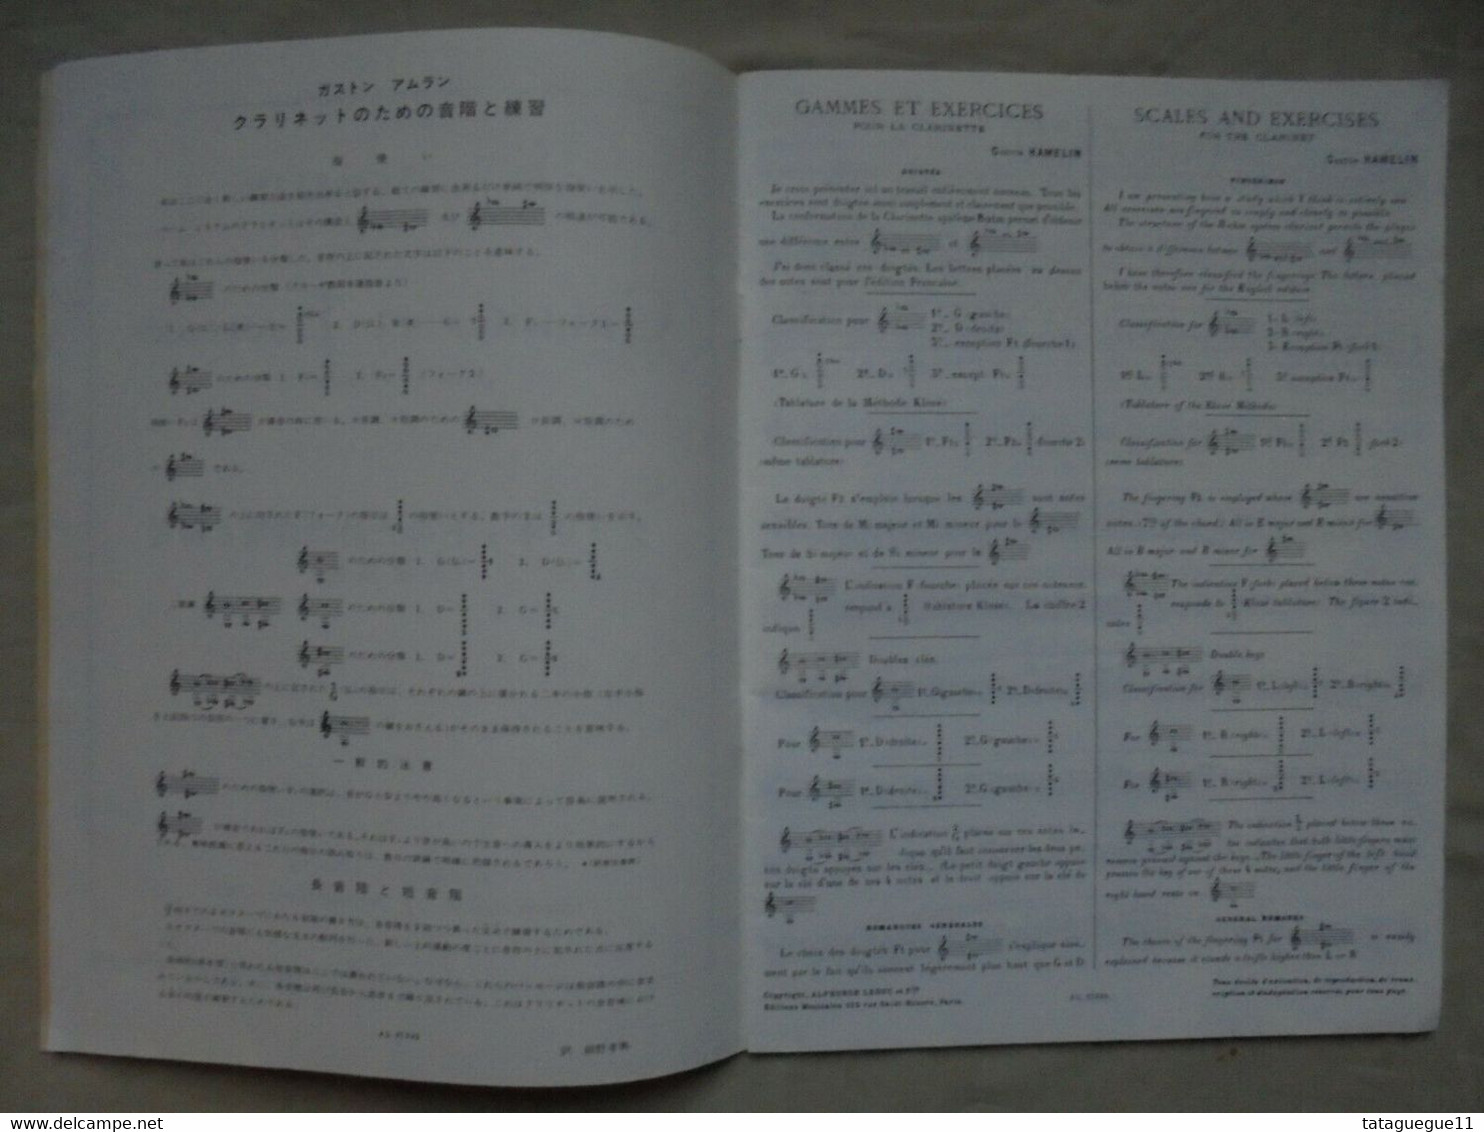 Vintage - Livre Gammes Et Exercices Pour La Clarinette Gaston Hamelin 1979 - Textbooks